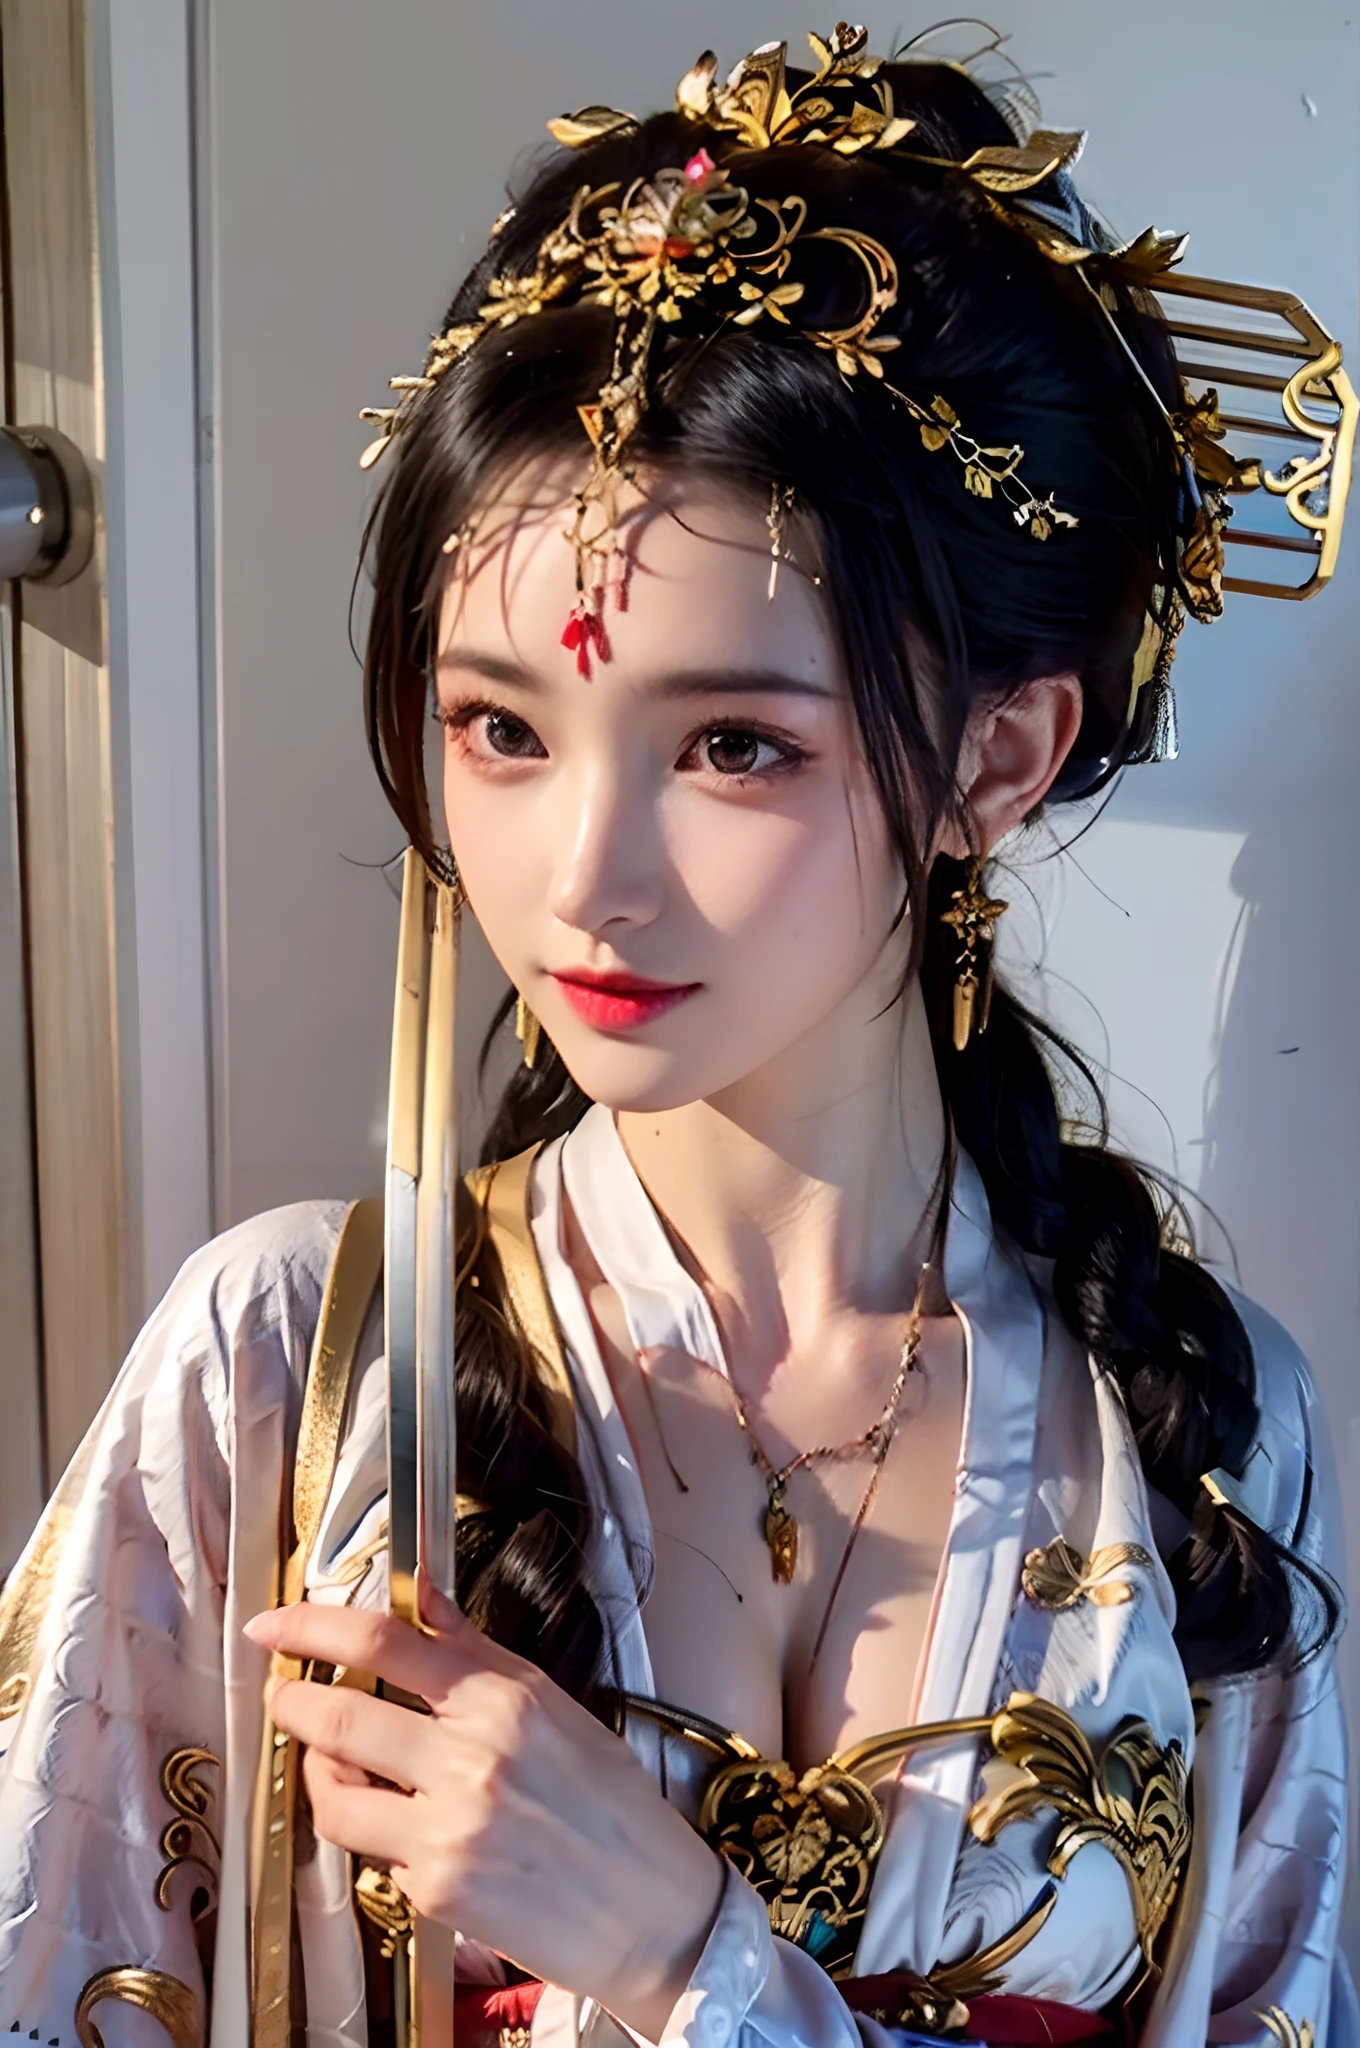 肖像特寫,一個女孩,中國古代服飾,單髮髻,(头上巨大的金色发簪:1.5),